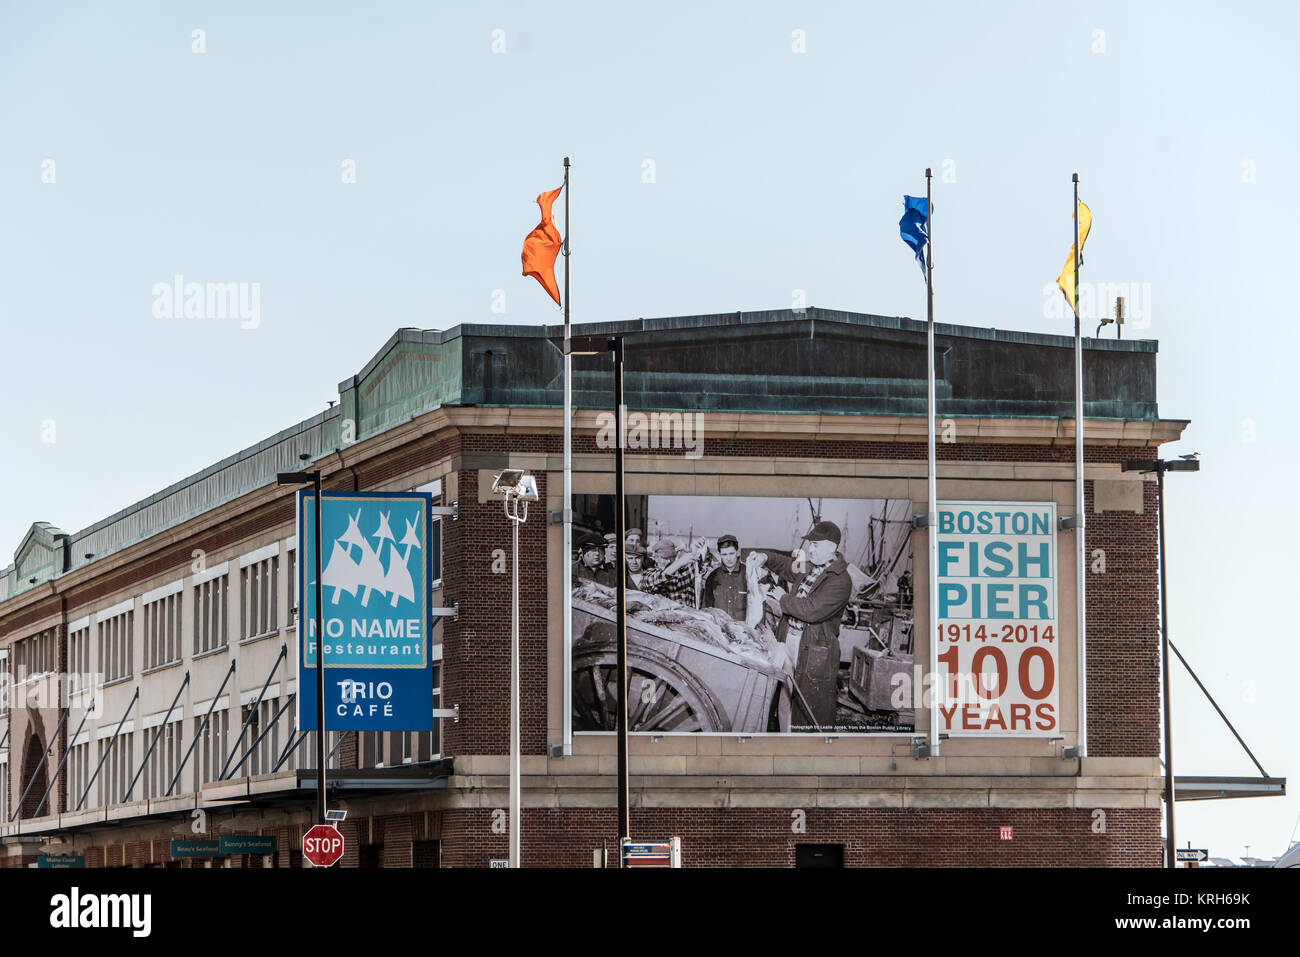 Boston, MA, USA 05.09.2017 - 100 ans anni fish pier market place en été Banque D'Images